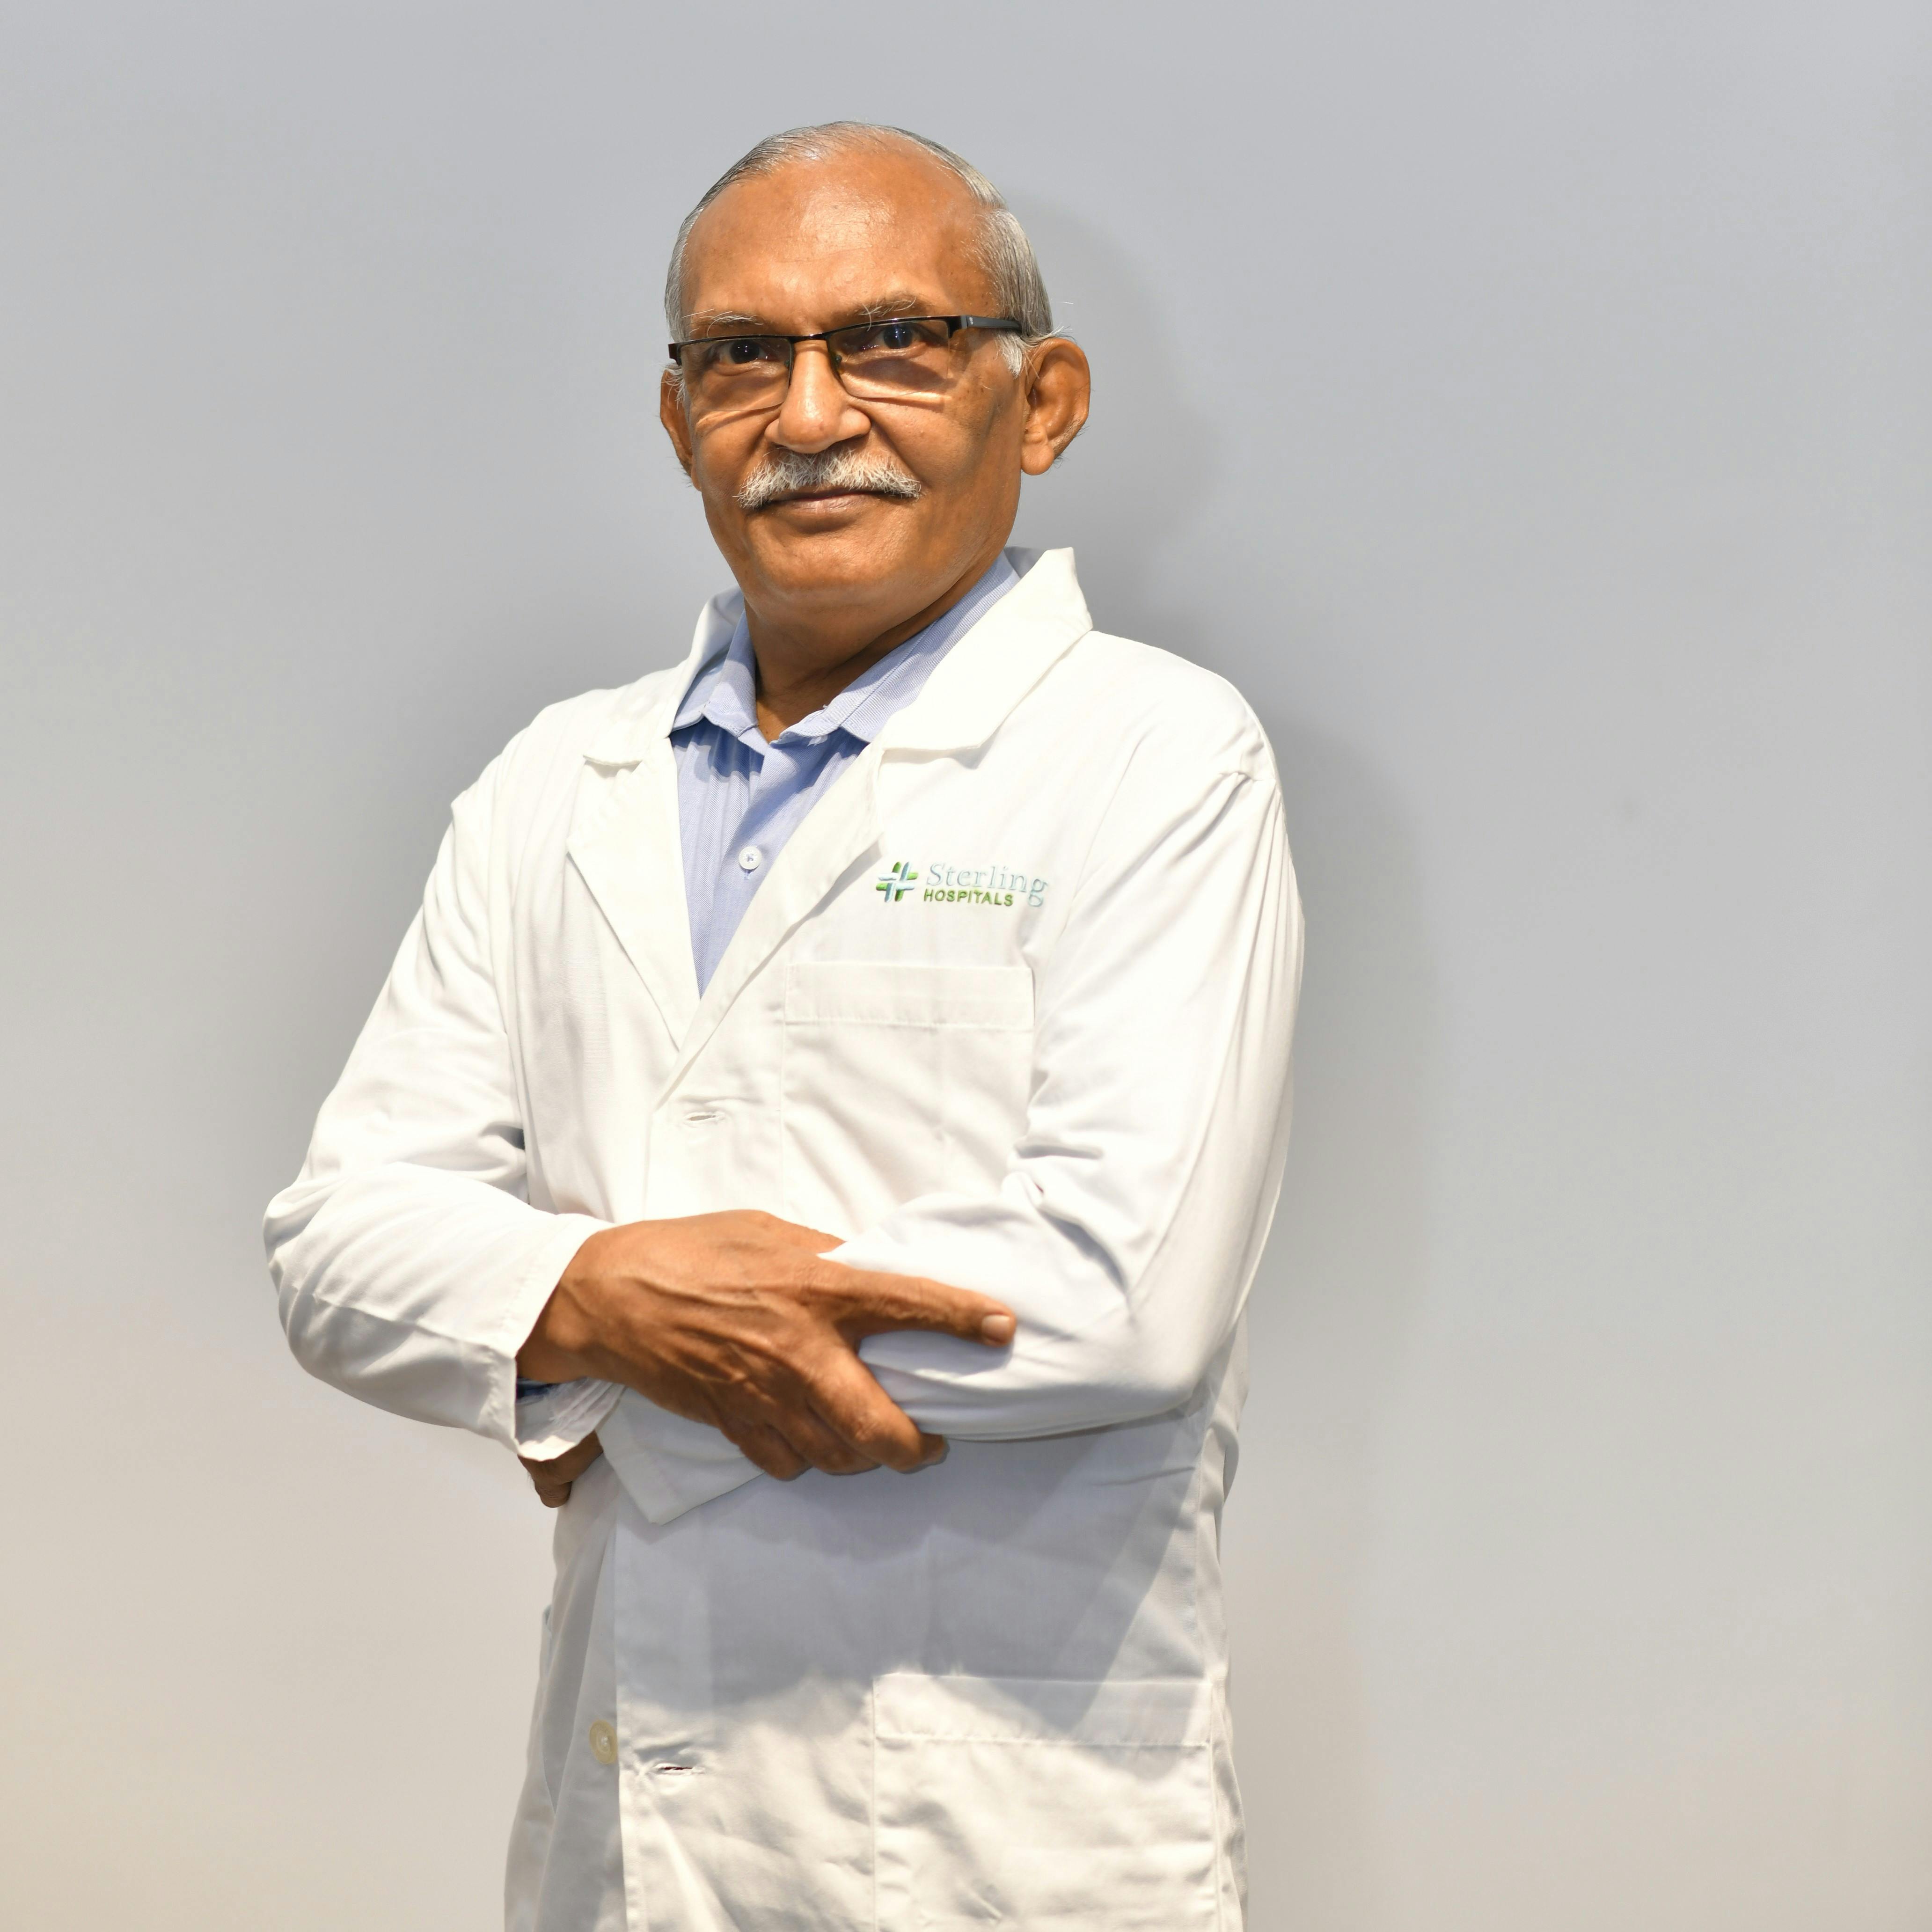 Dr. Kaushik Trivedi